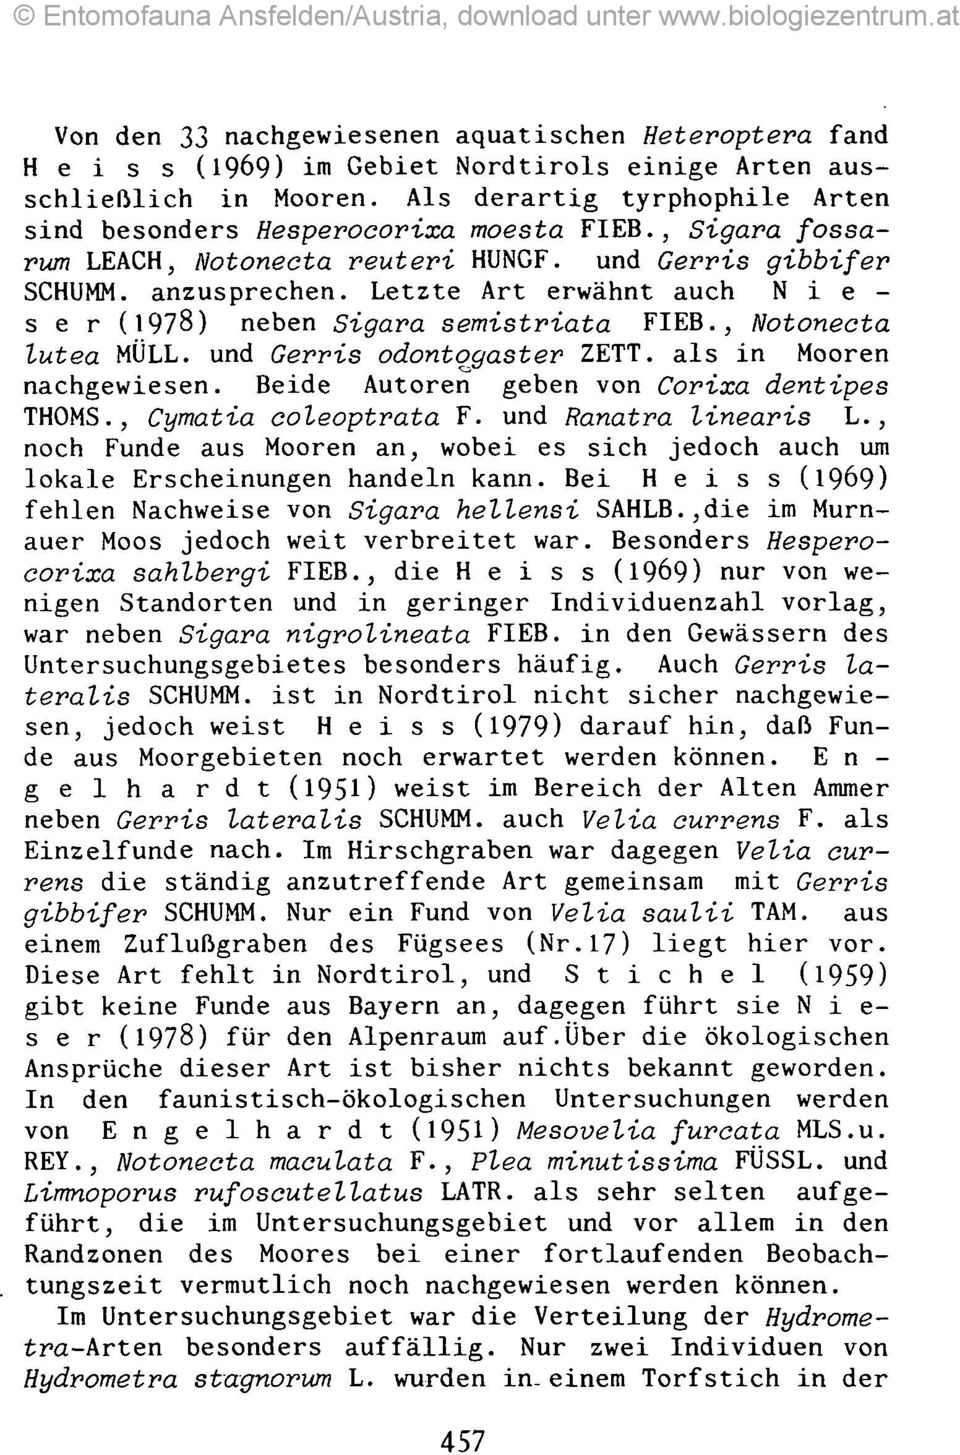 Letzte Art erwähnt auch N i e - ser (1978) neben Sigara semistriata FIEB., Notonecta lutea MÜLL, und Gerris odontqßaster ZETT. als in Mooren nachgewiesen.